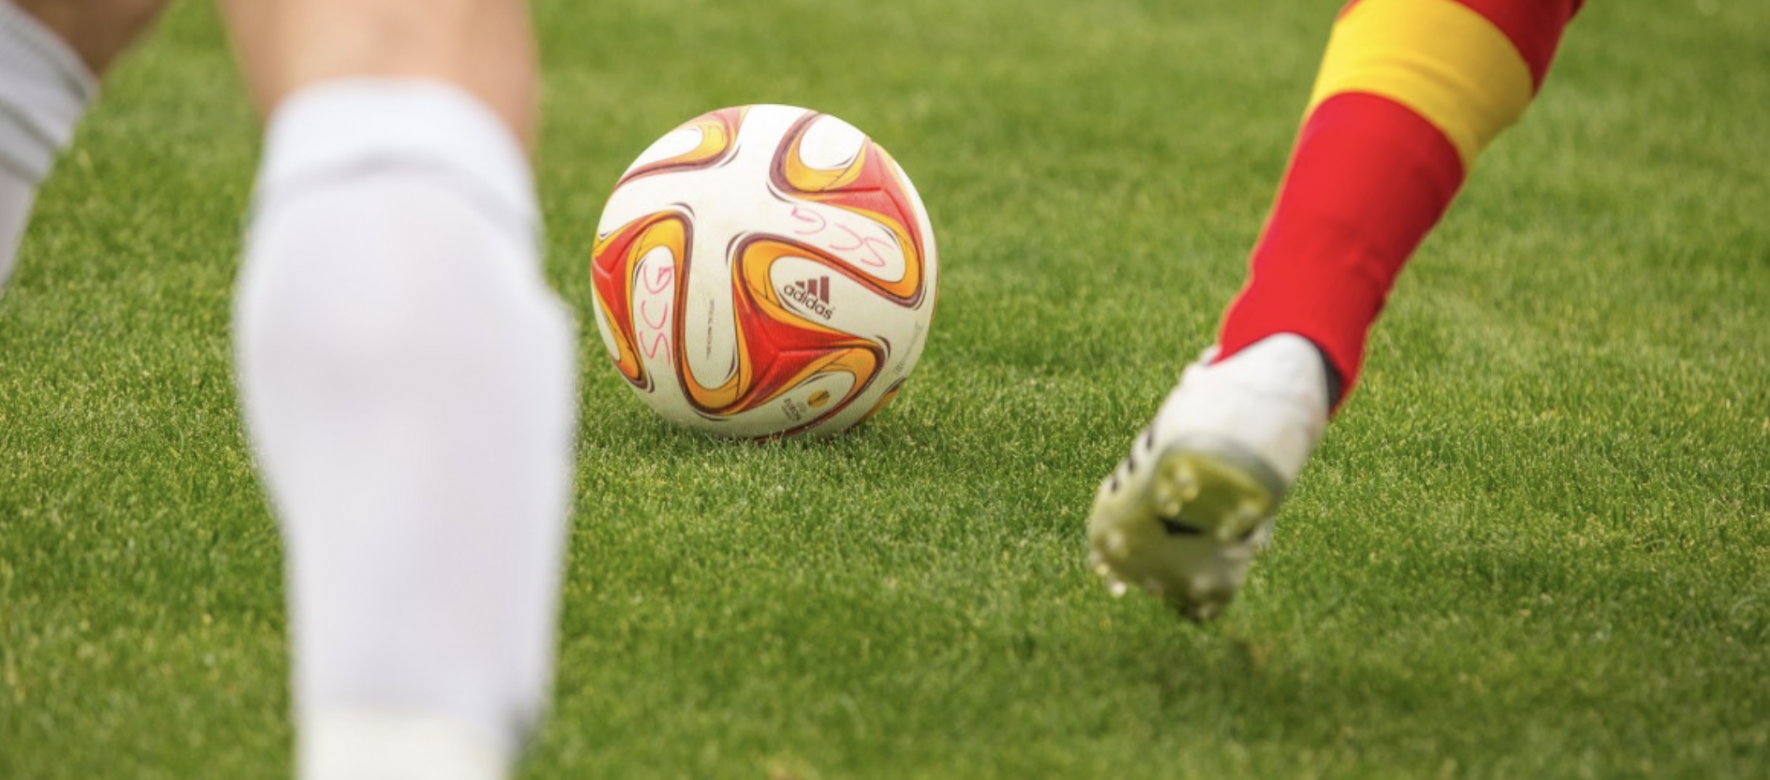 Football : BeIN Sports diffusera la Premier League au Moyen-Orient et en Afrique du Nord jusqu’en 2025 1